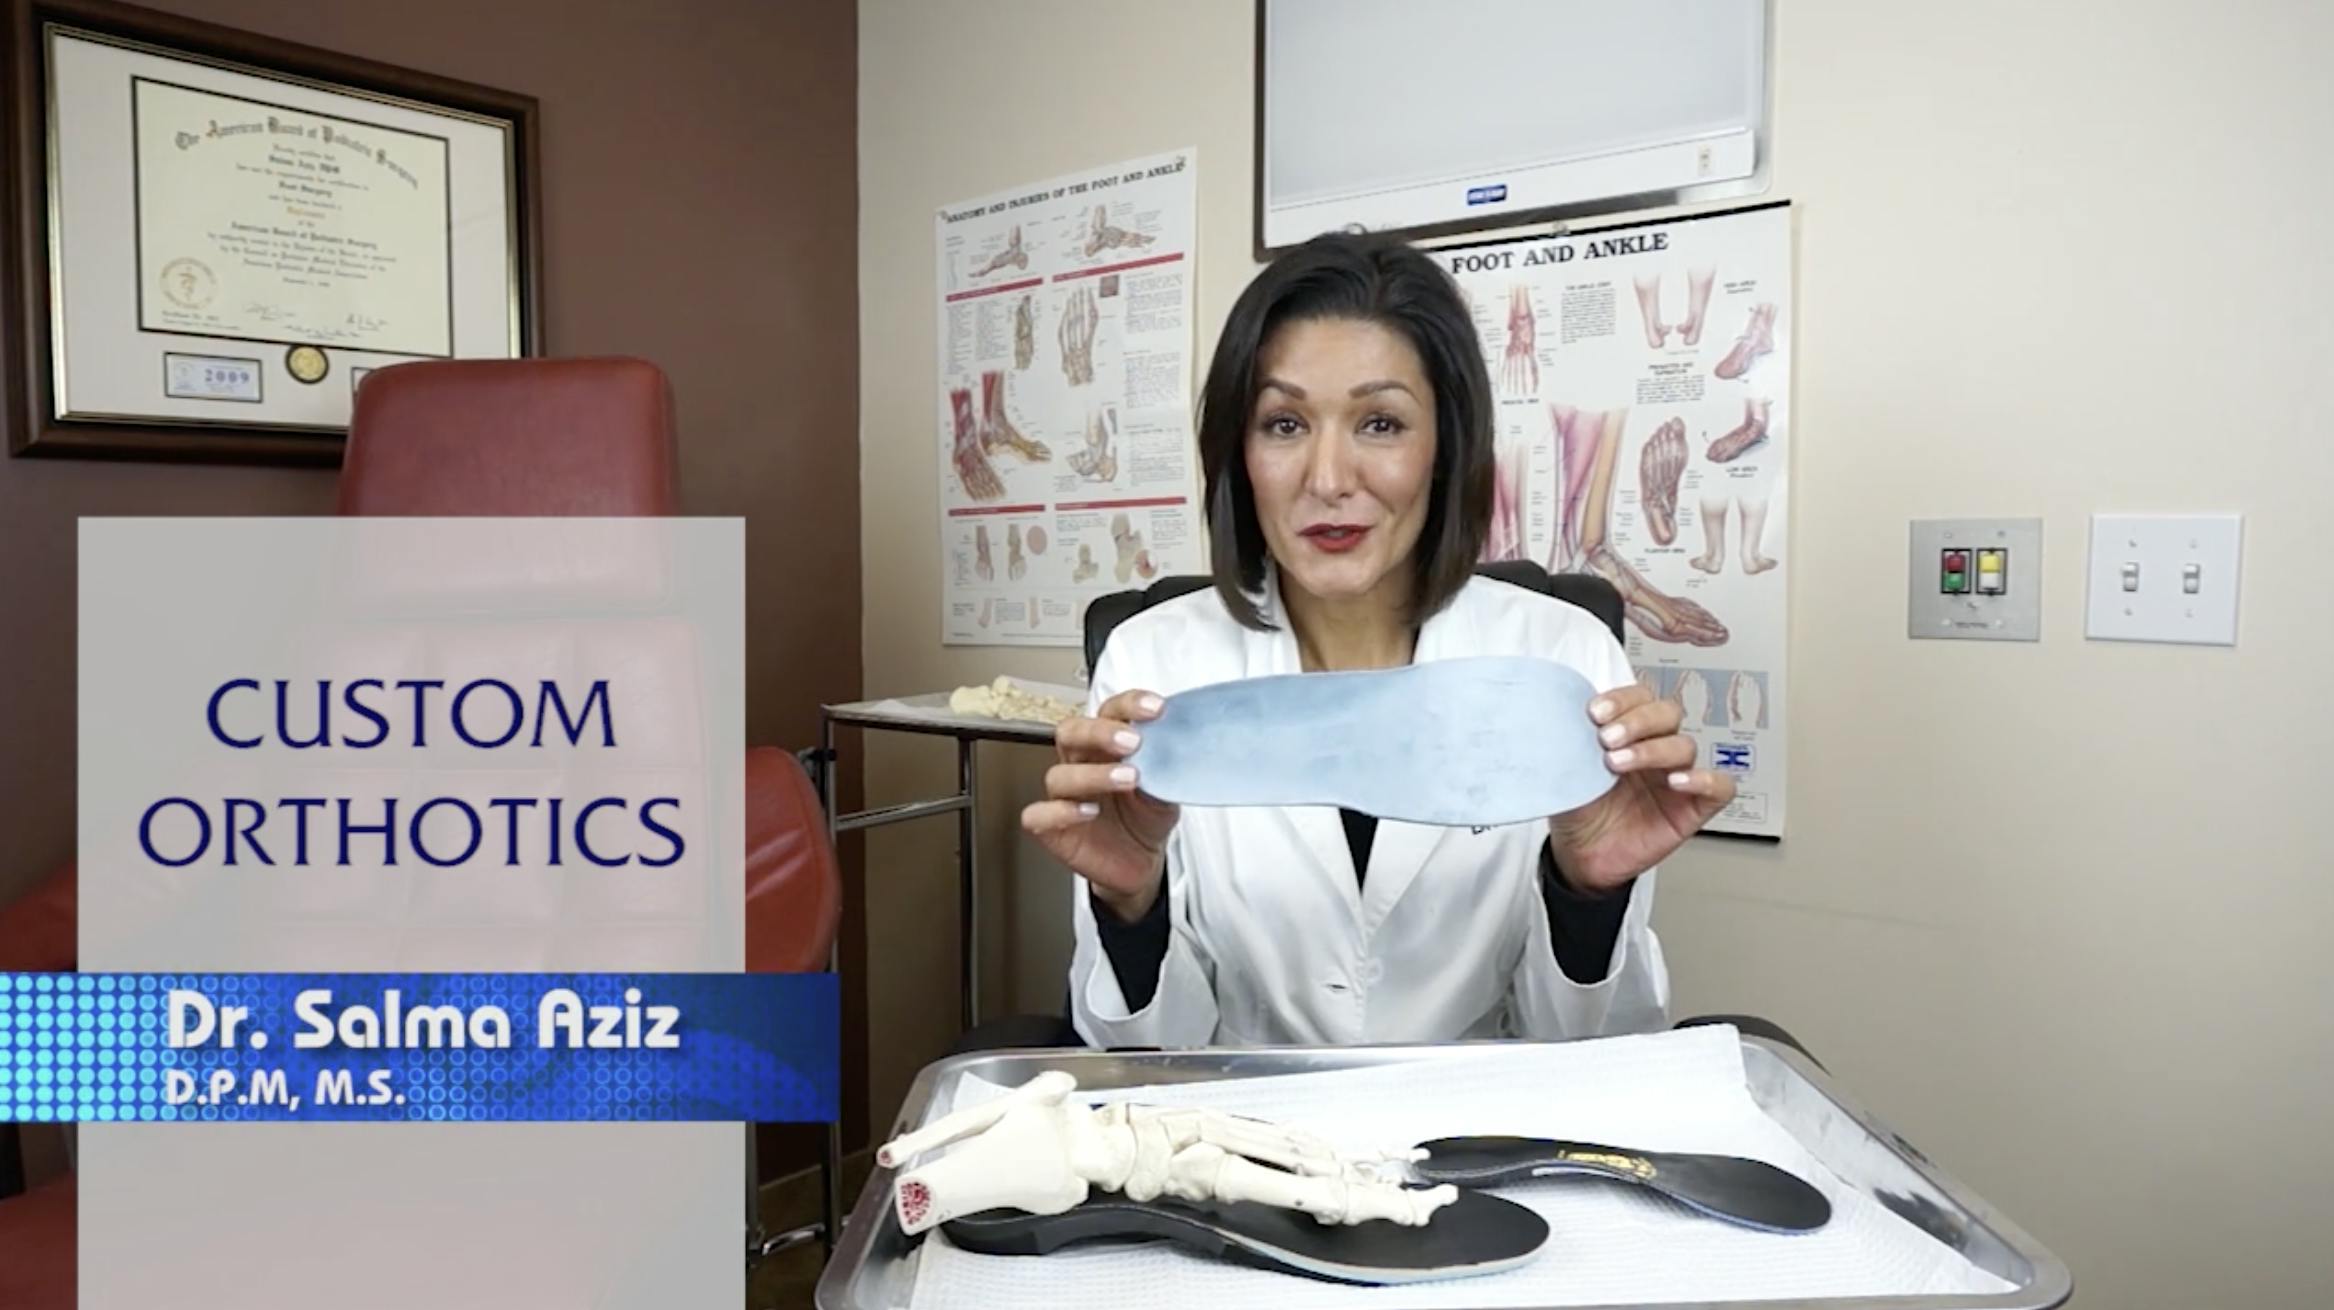 Dr. Aziz talking about custom orthotics